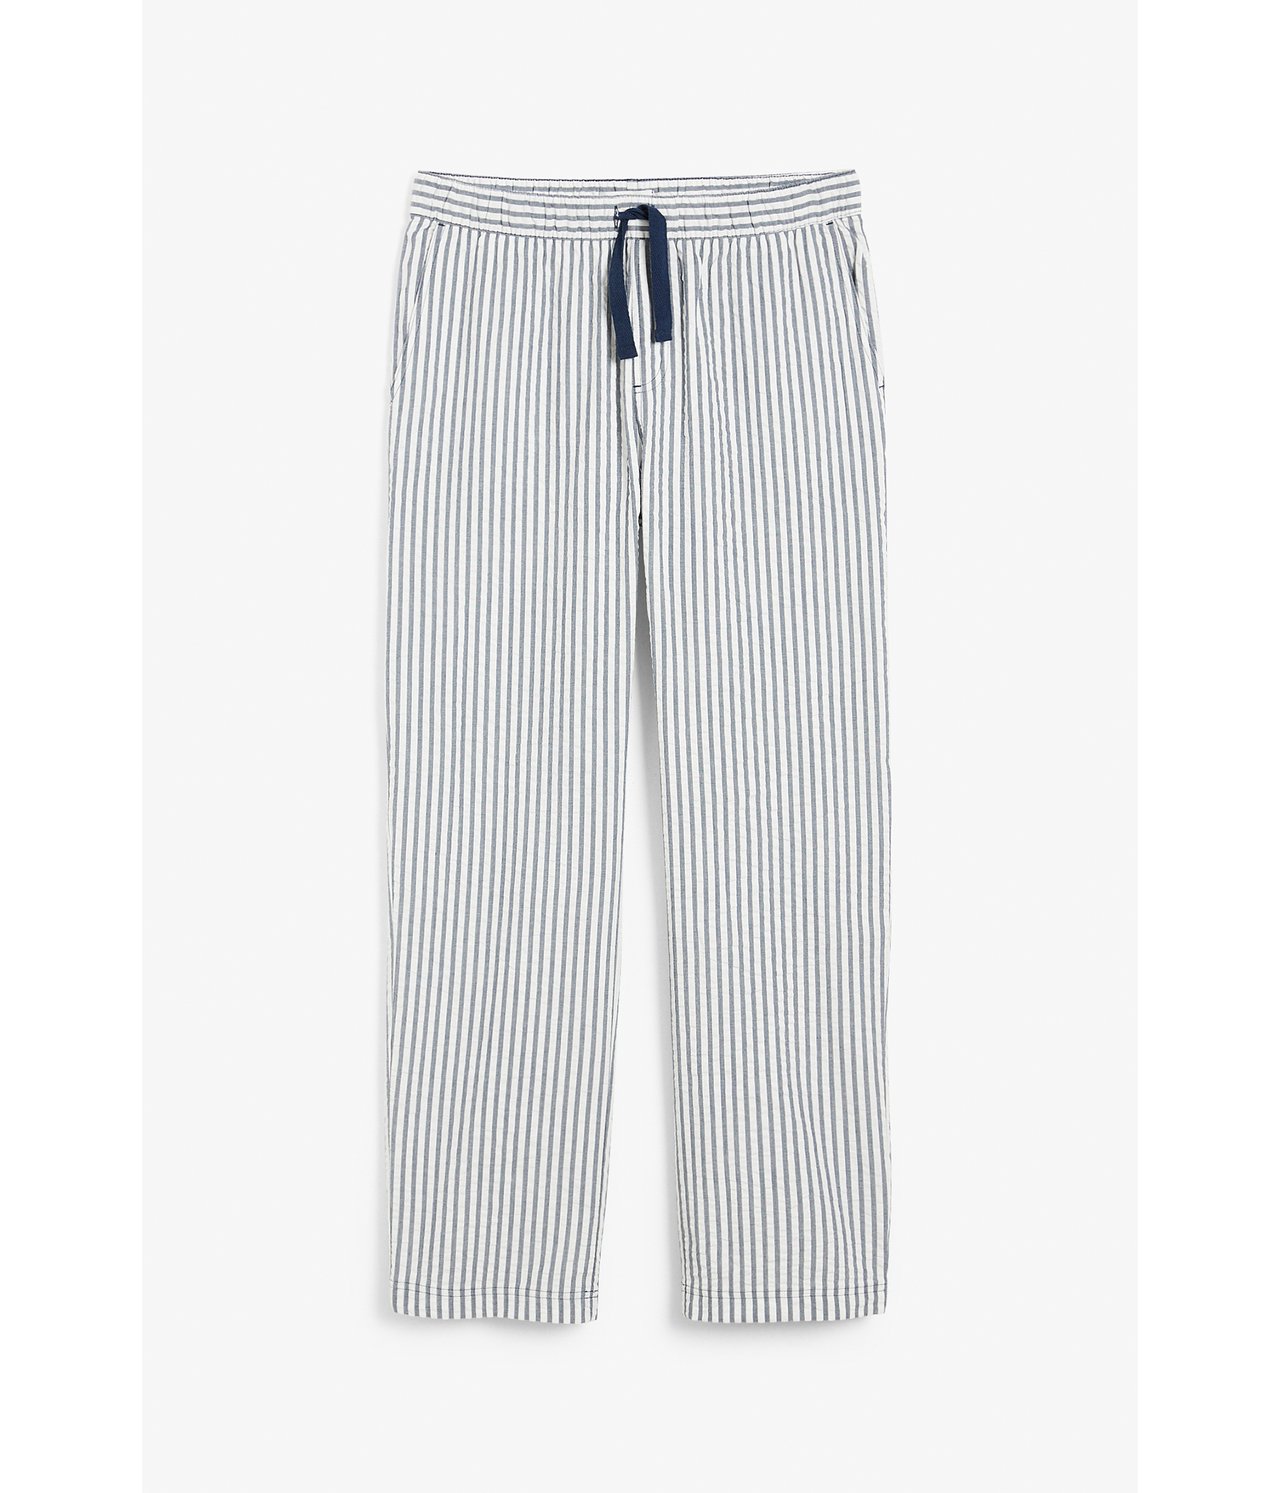 Pyjamasbukse i seersucker Mørkeblå - null - 1